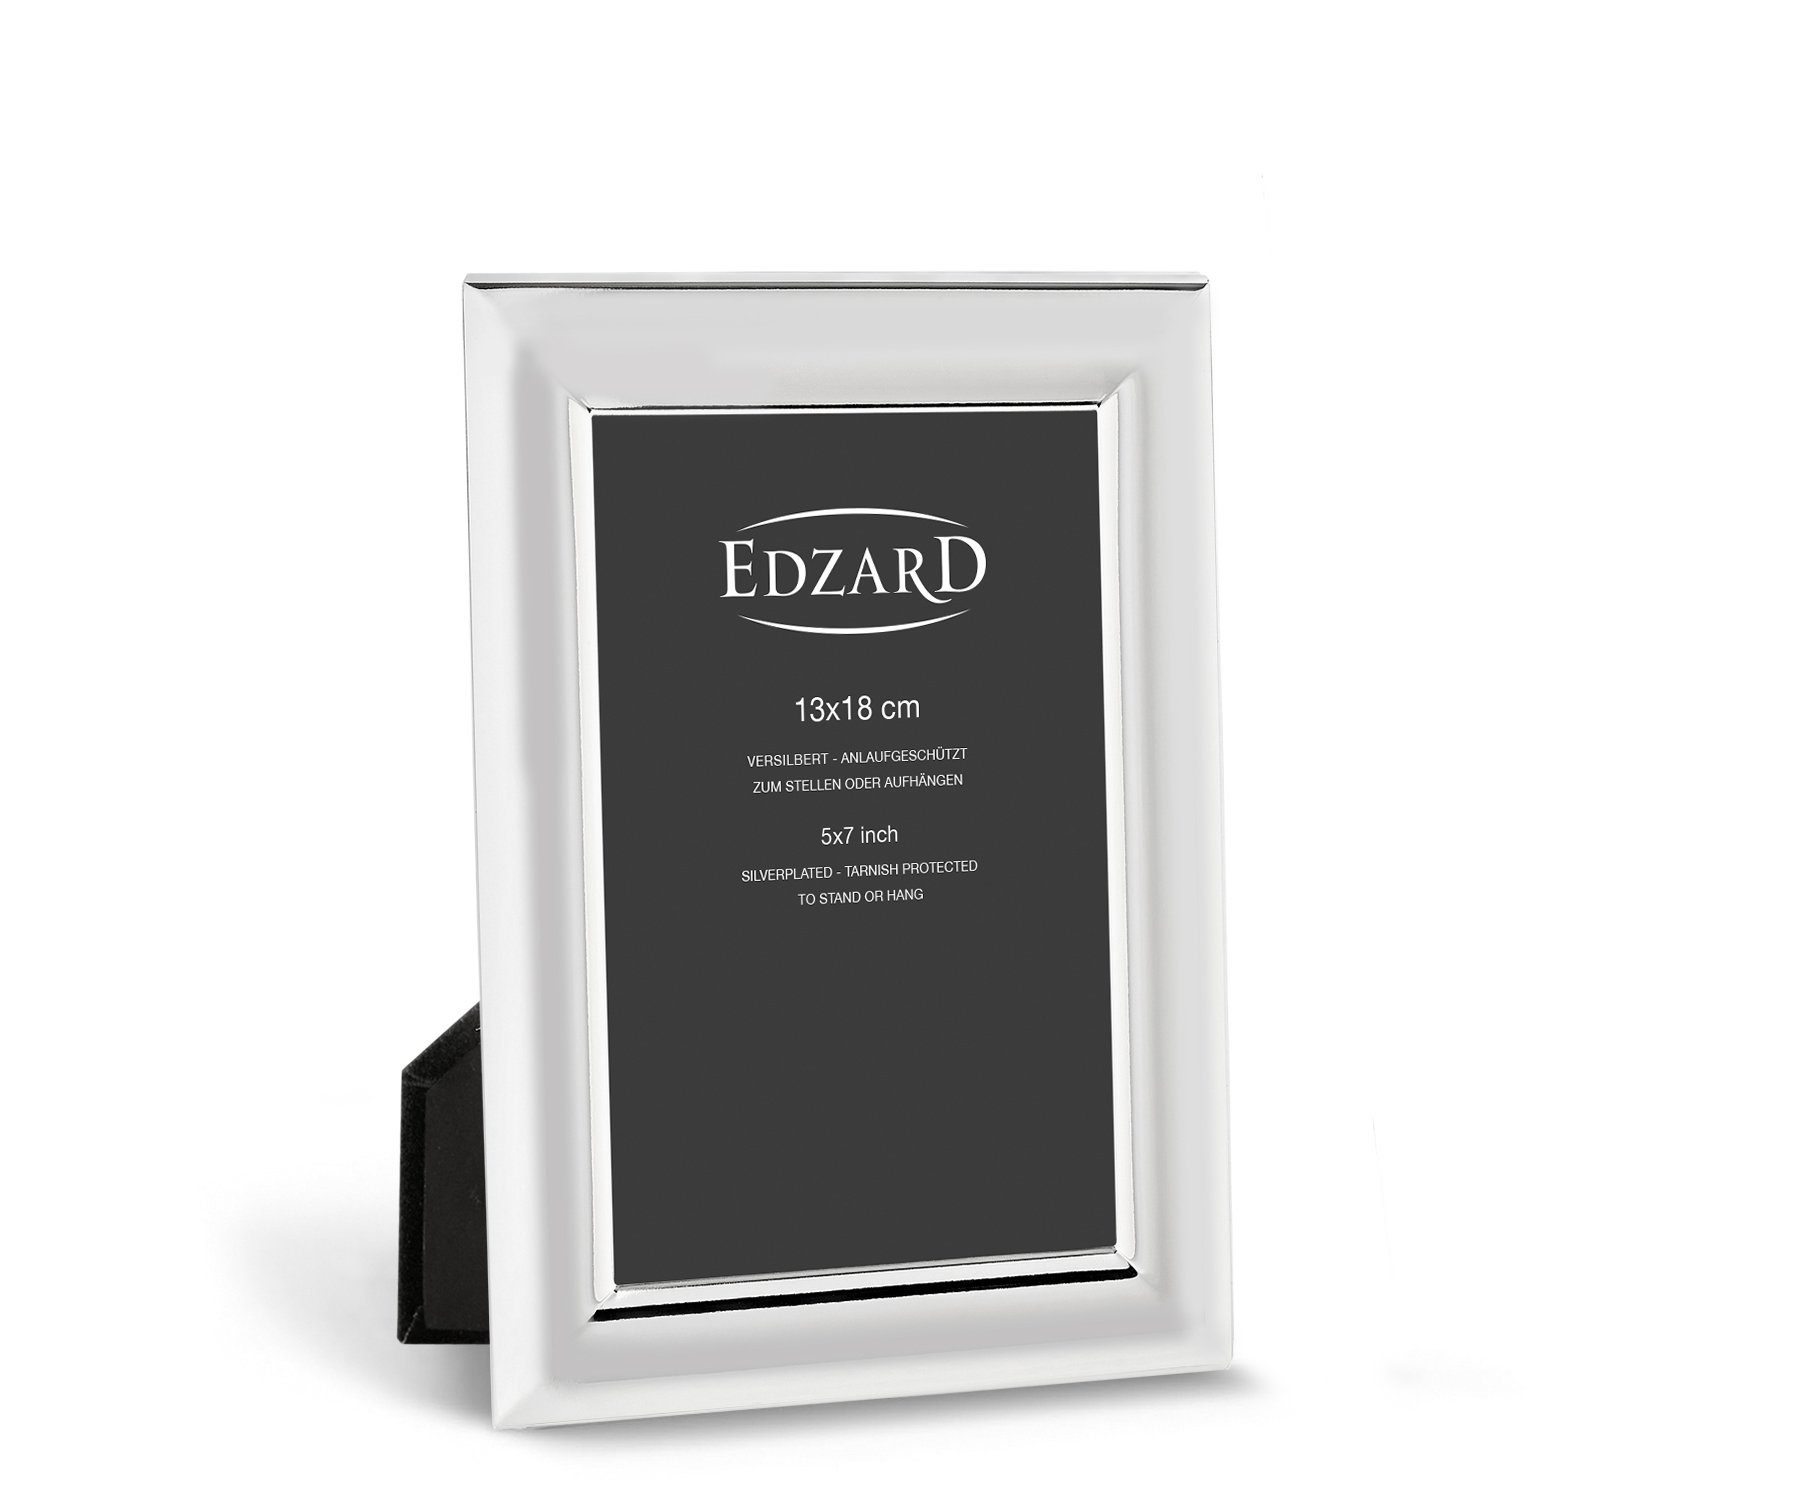 EDZARD Bilderrahmen Telde, für 13x18 cm Foto, edel versilbert & anlaufgeschützt